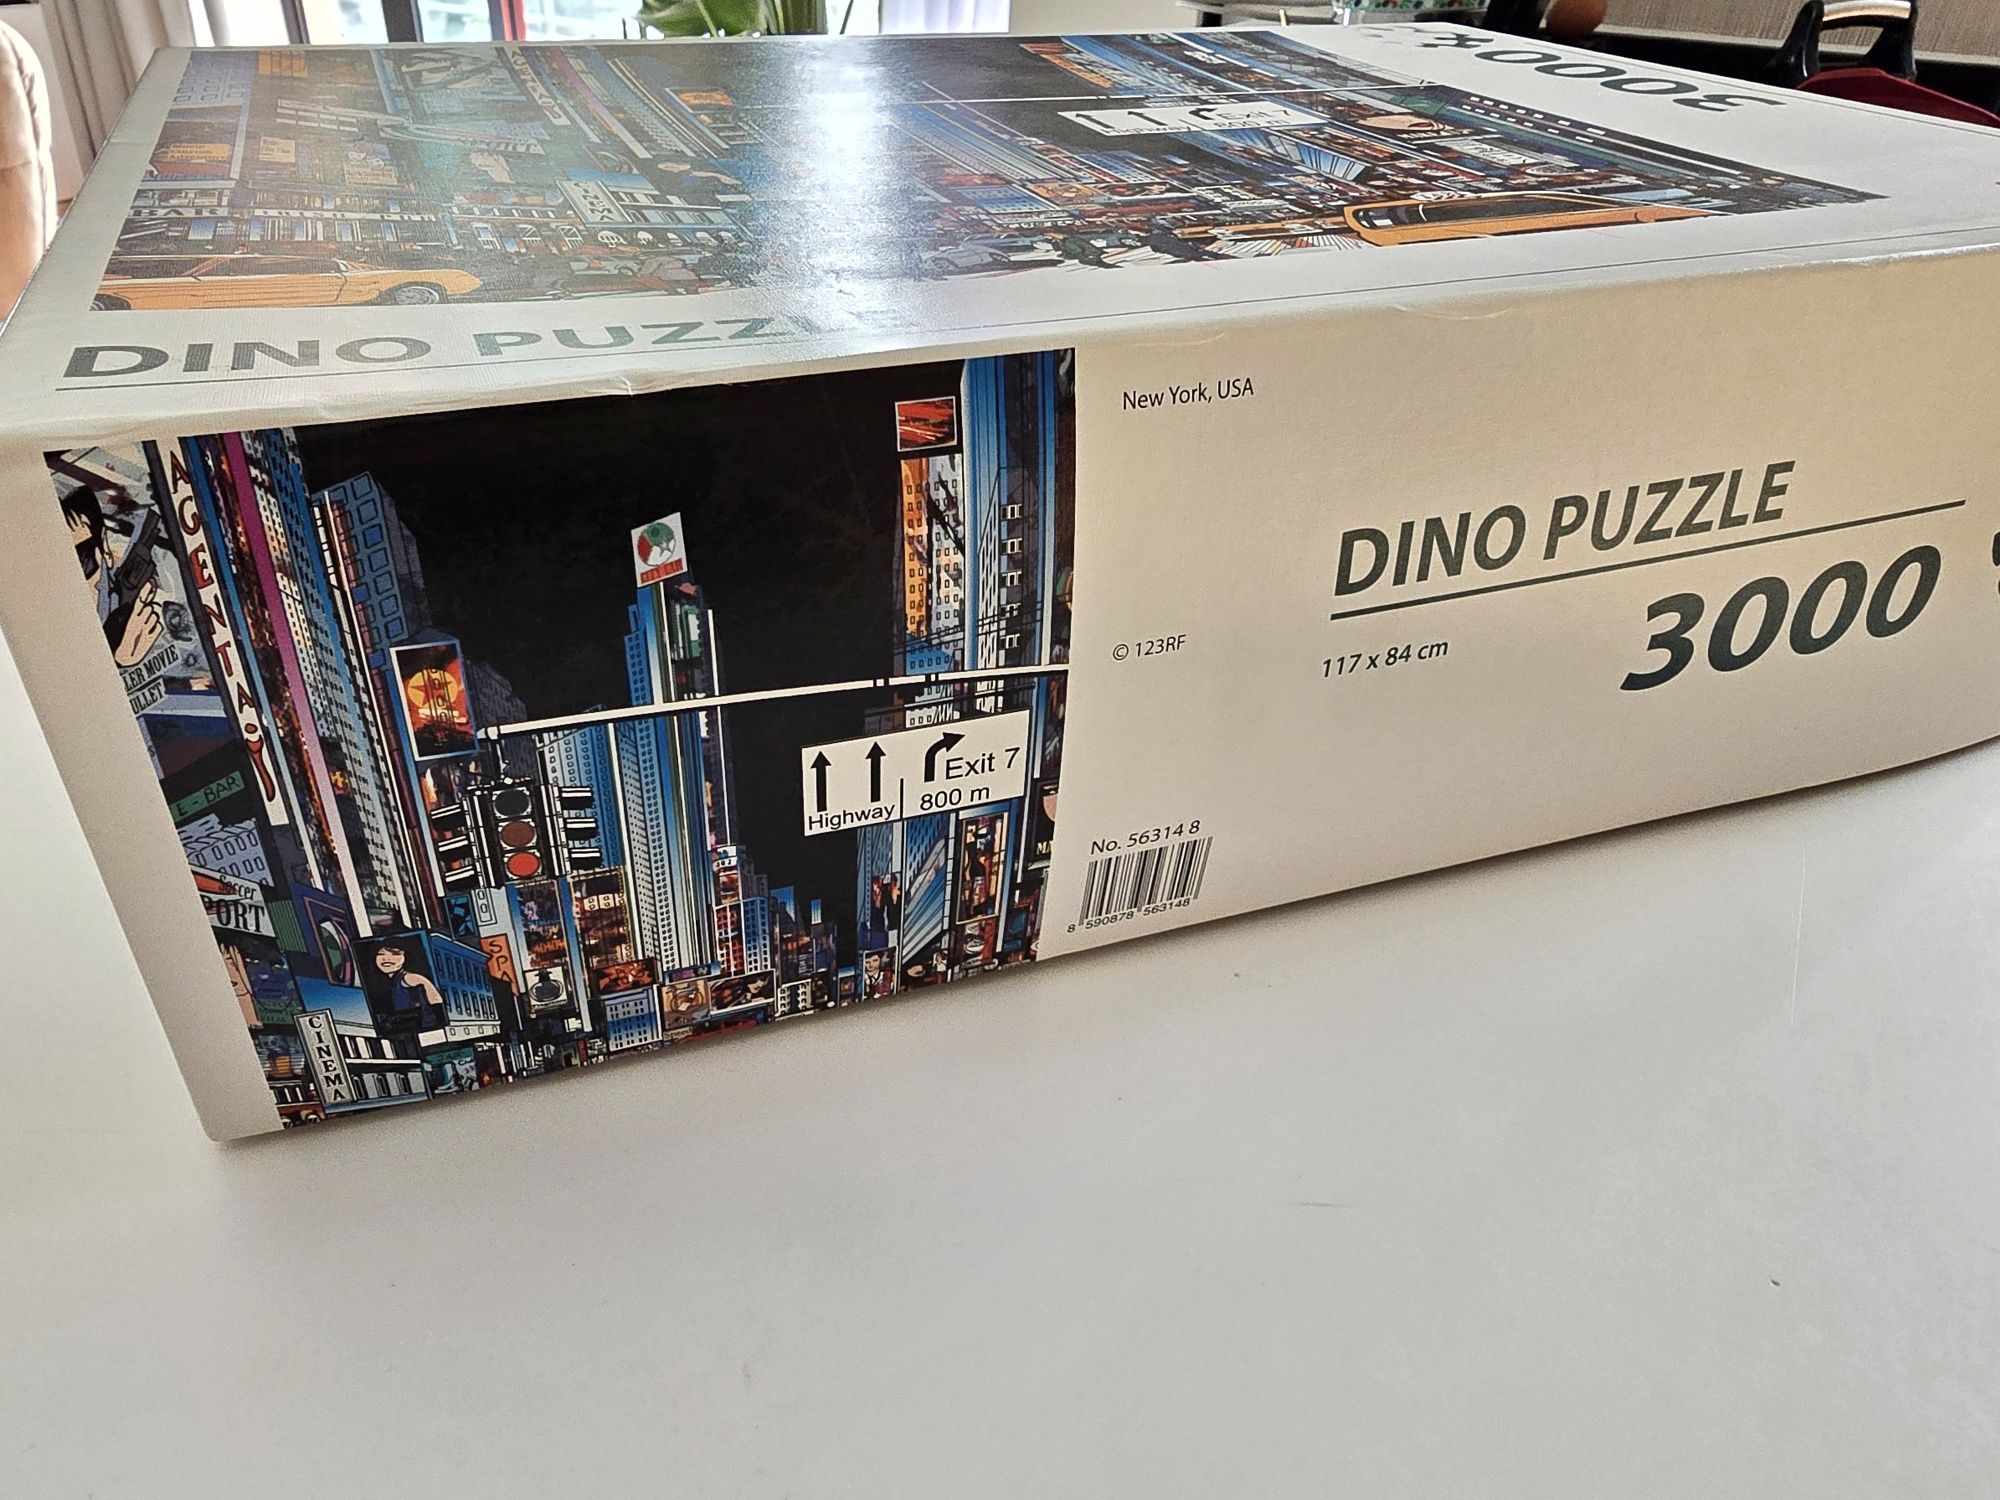 3000 Dino puzzle New York